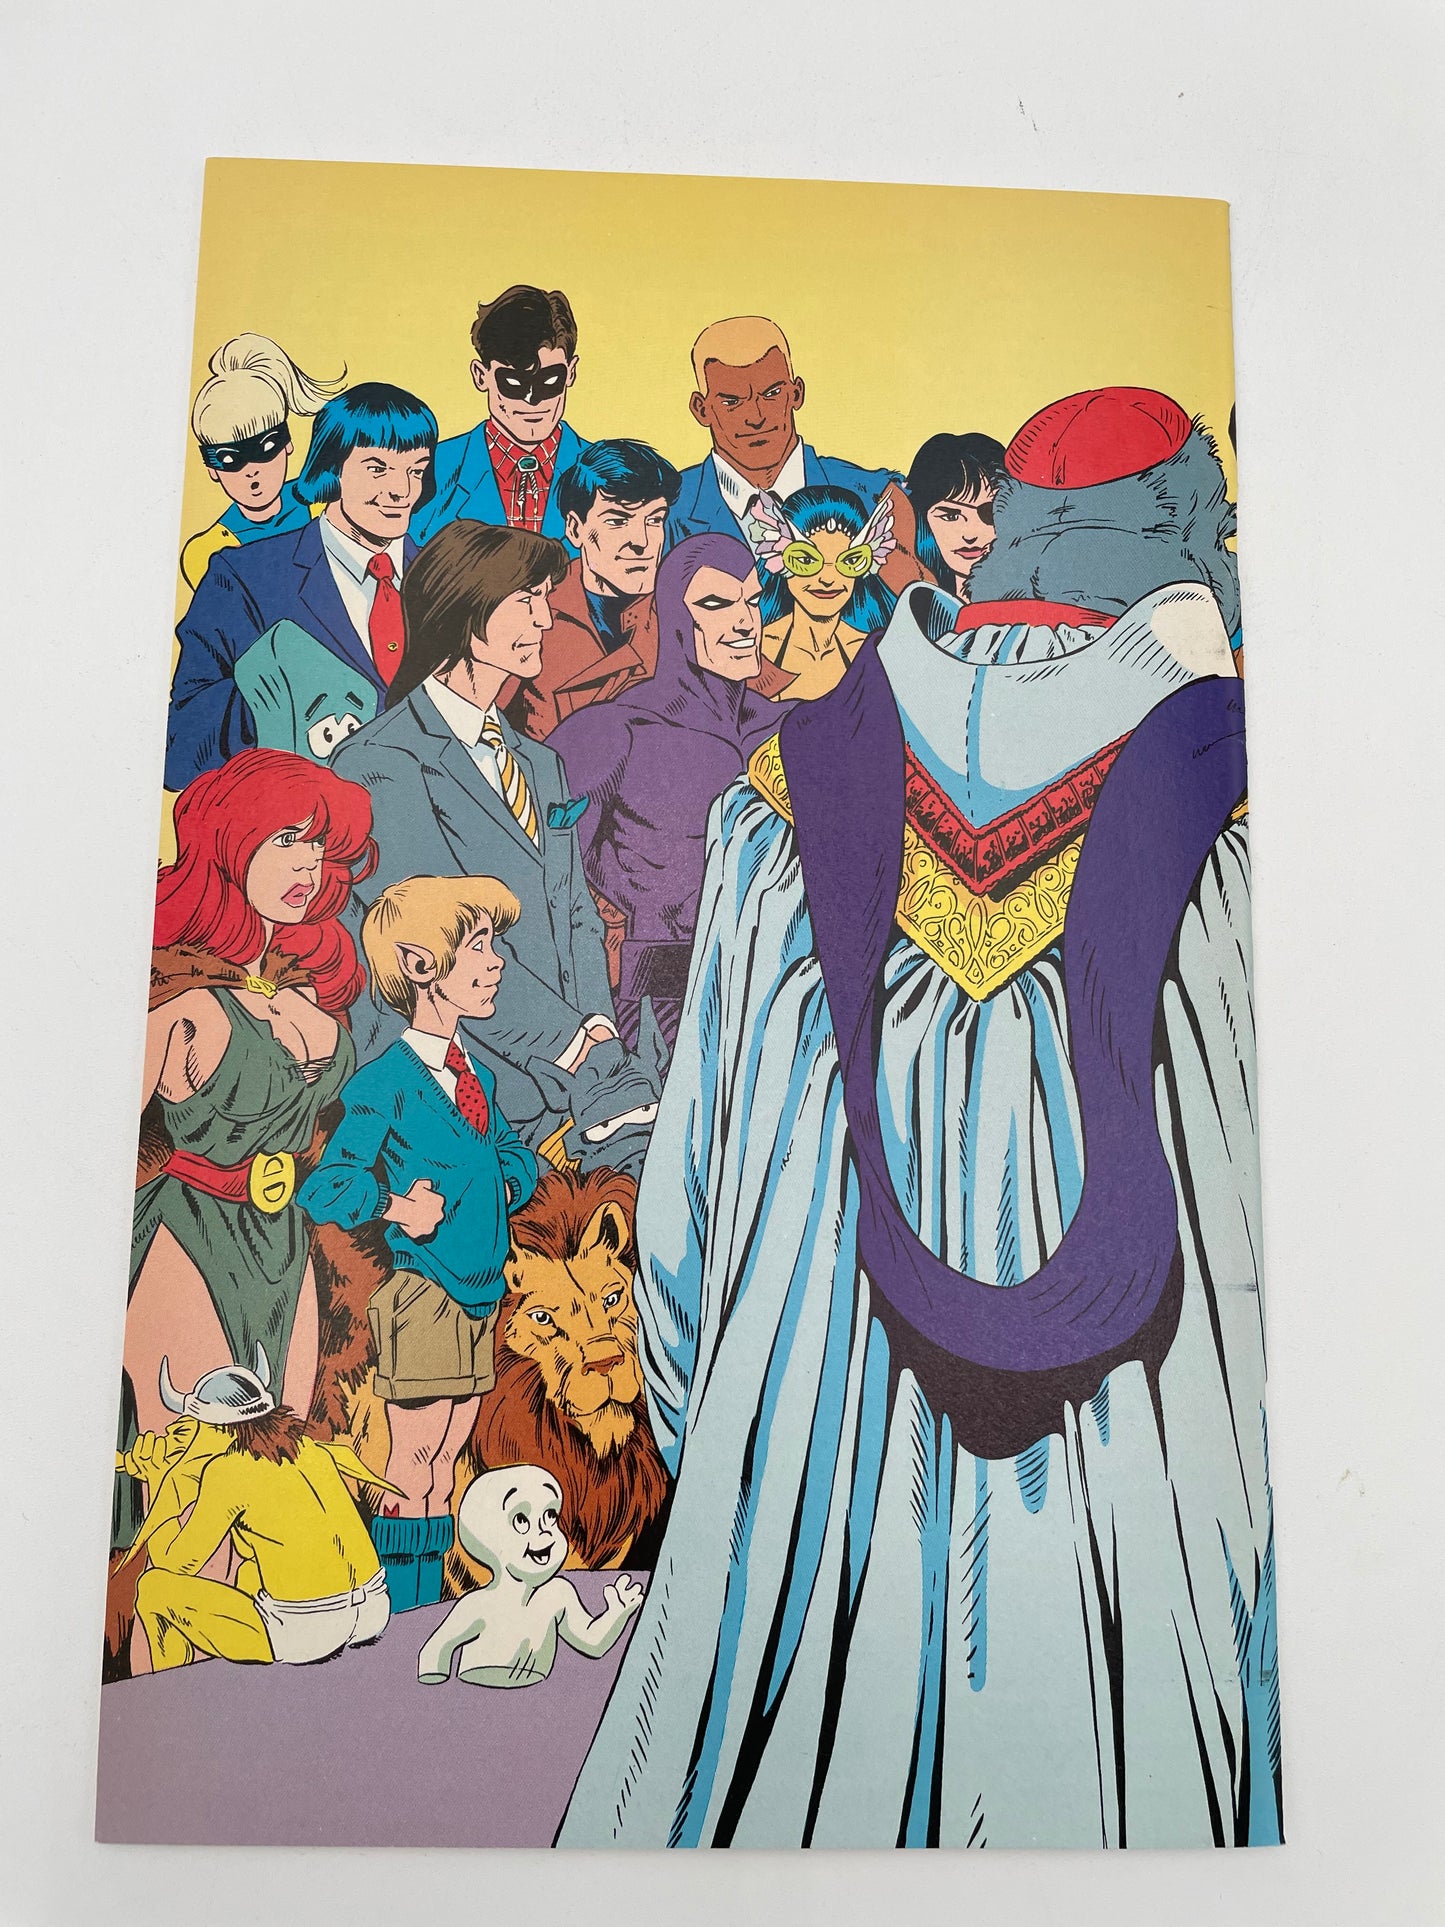 Comico Comics - Elementals #7 September 1989 #102369